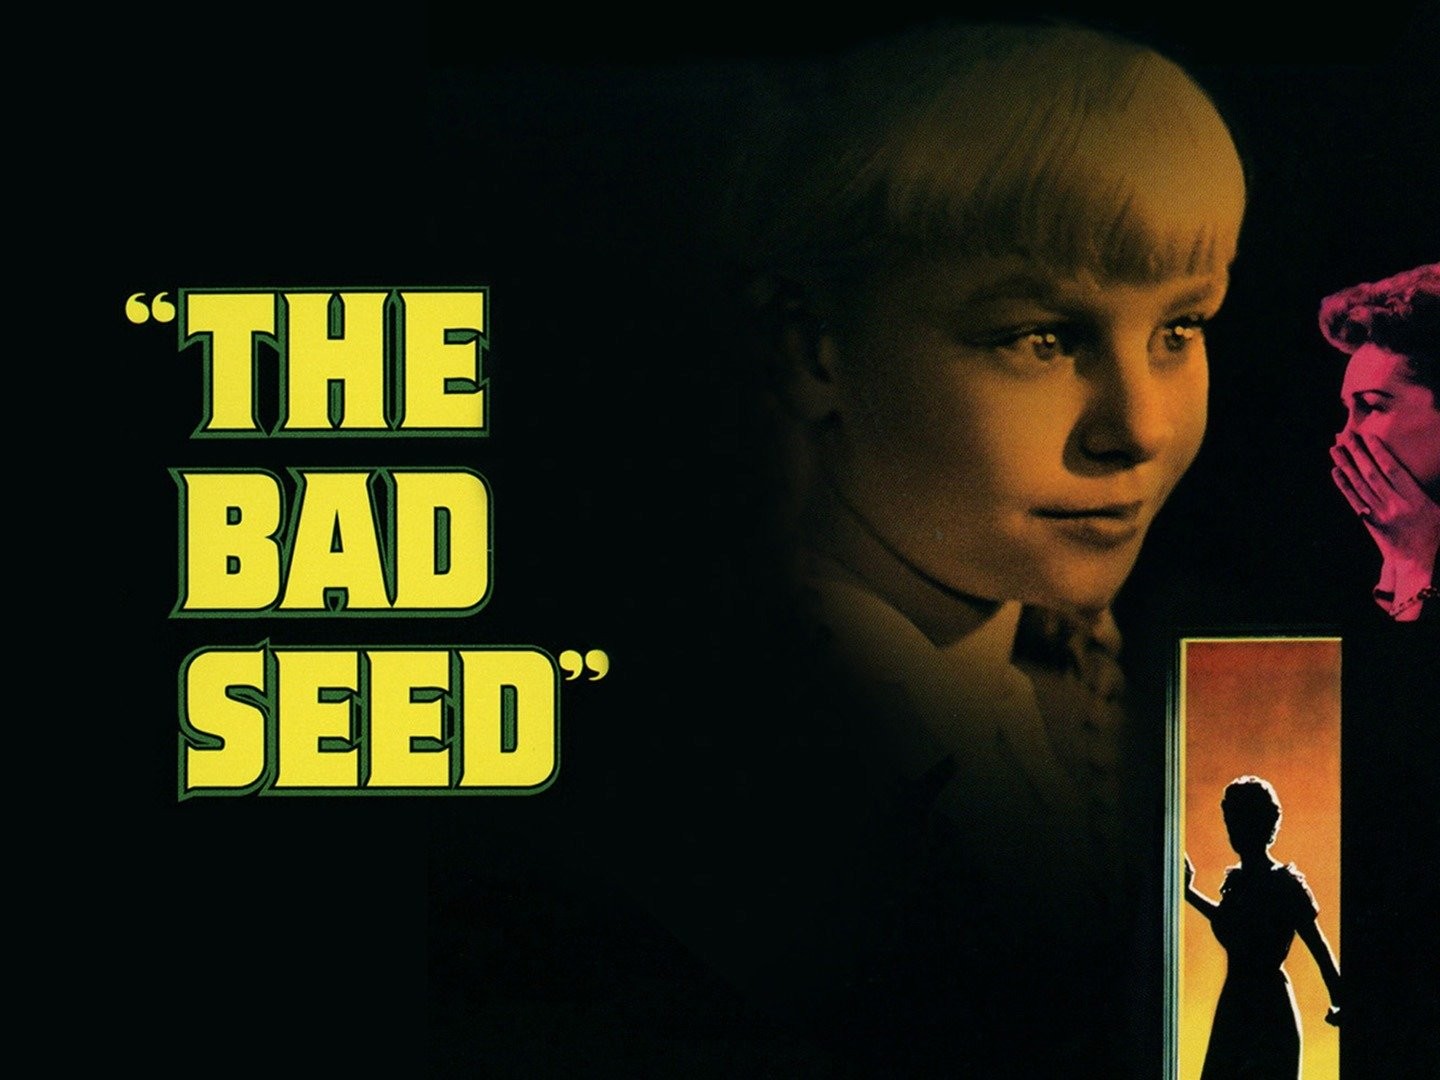 The Bad Seed filme - Veja onde assistir online